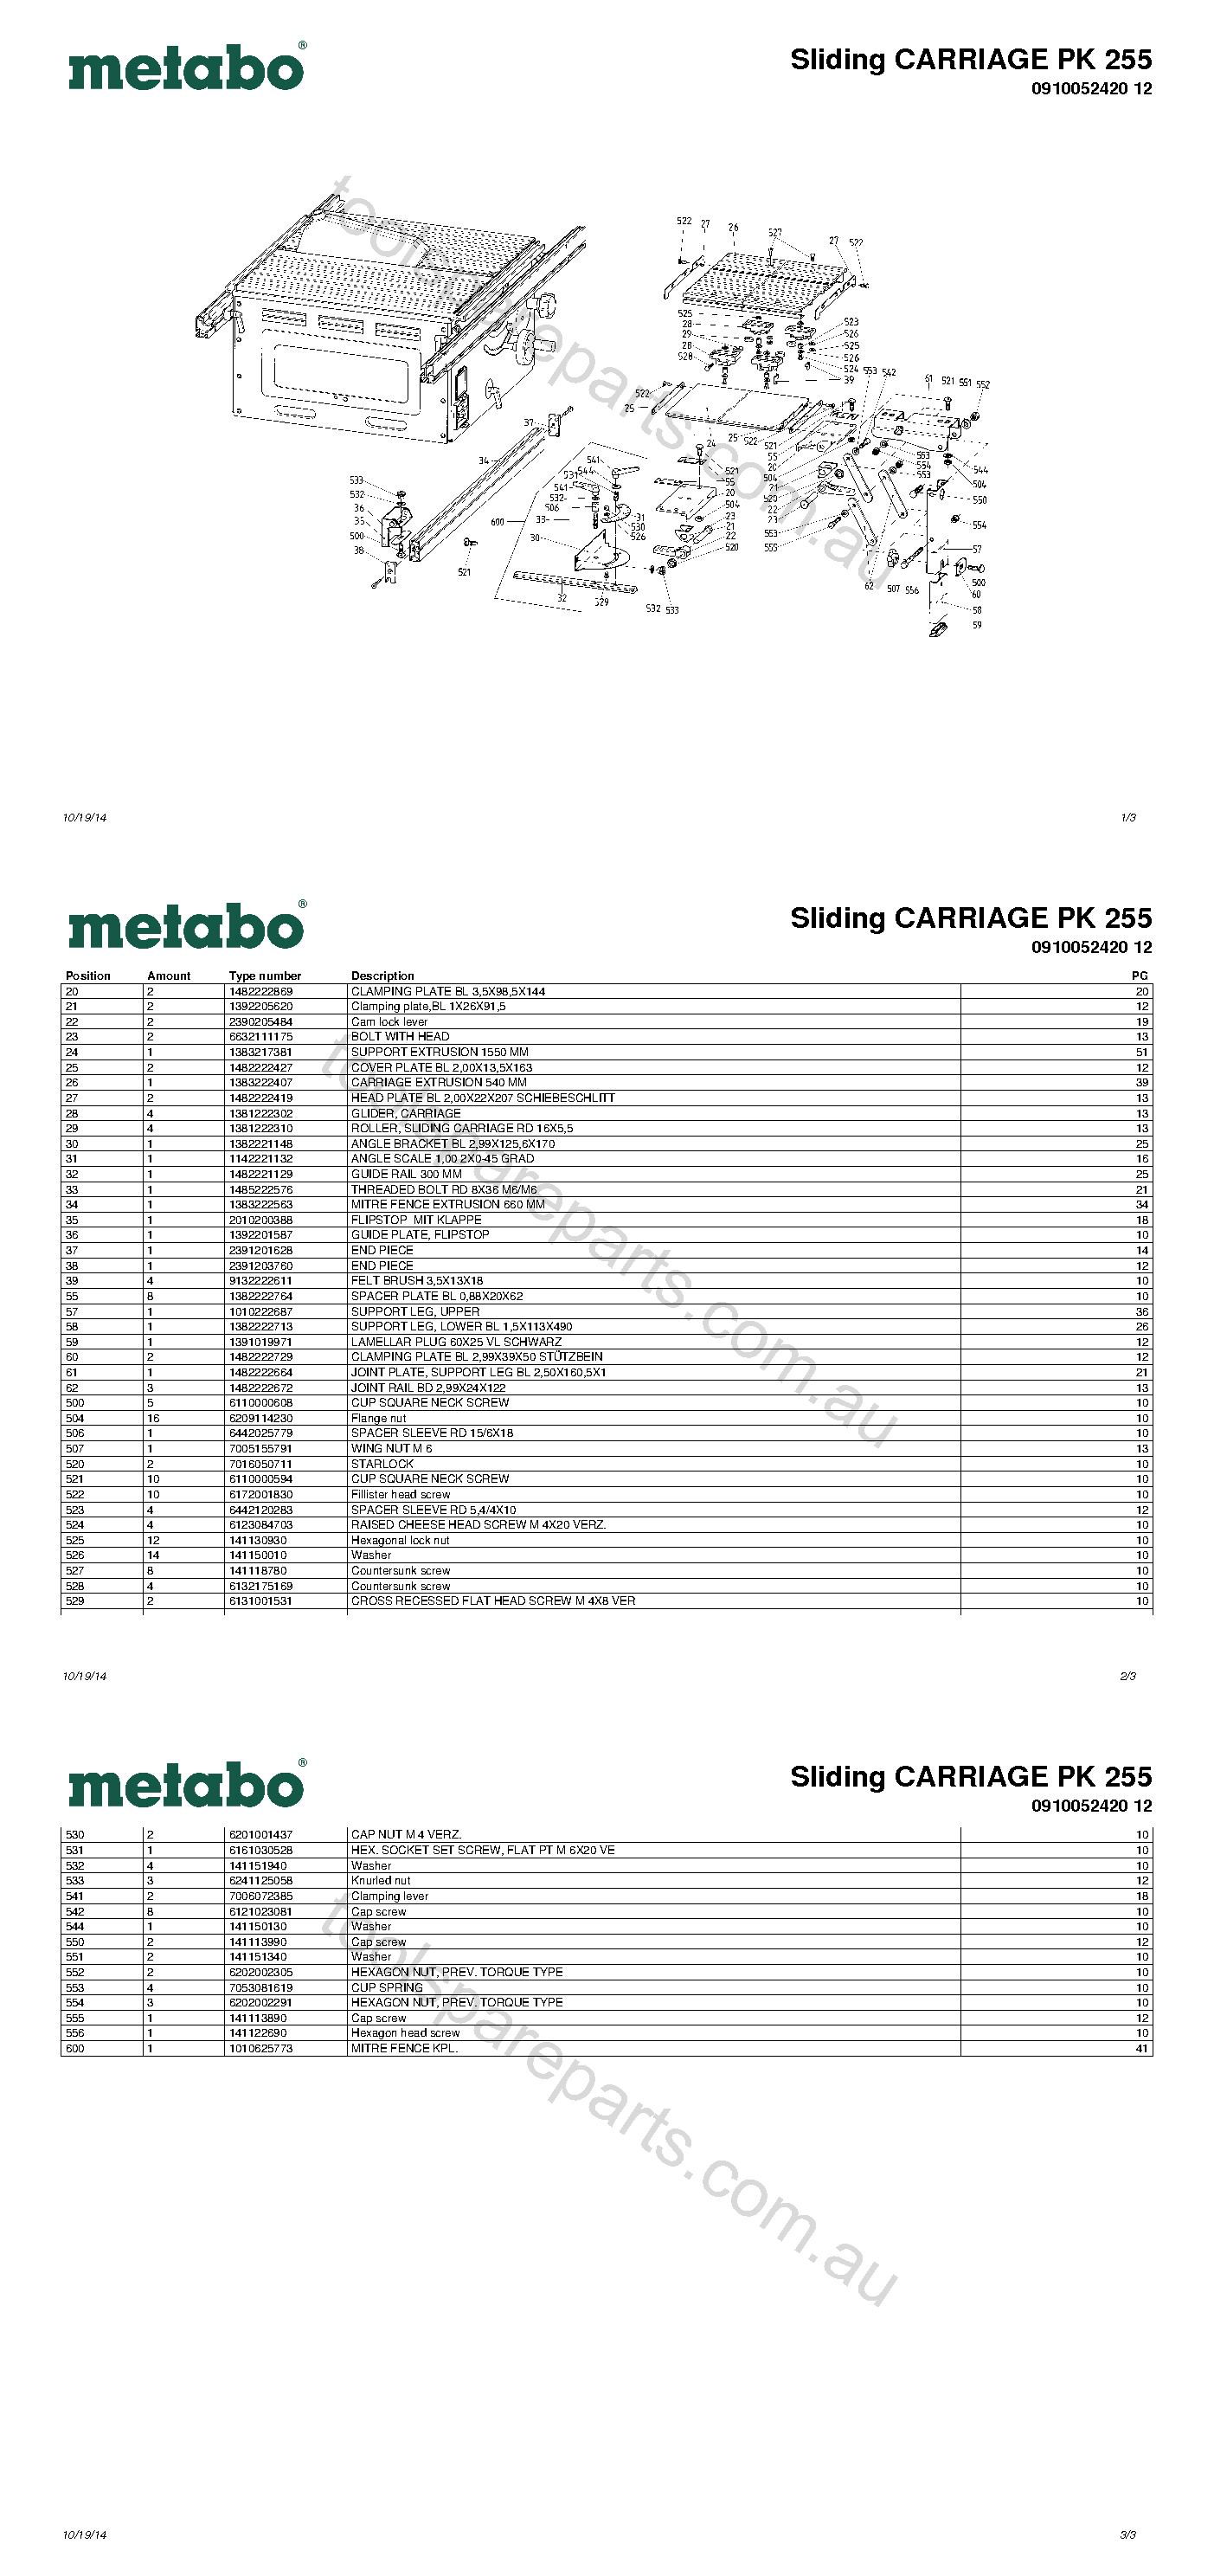 Metabo Sliding CARRIAGE PK 255 0910052420 12  Diagram 1